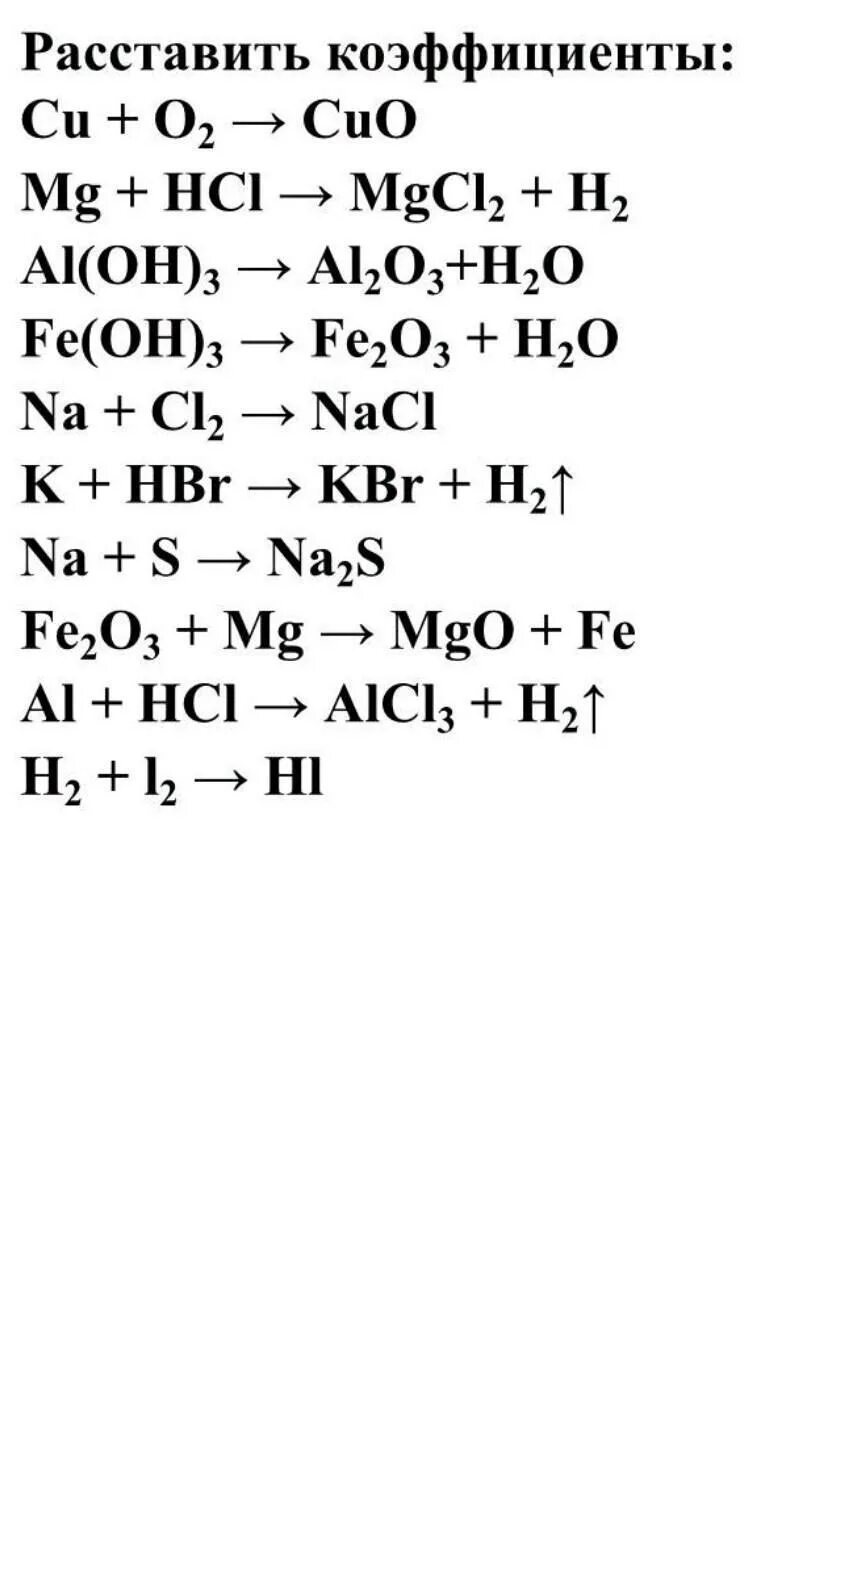 Уравнение реакции легкие. Химия 8 класс уравнивание химических реакций. Химические уравнения химия 8 класс коэффициенты. Уравнения реакций химия 8 класс. Химия 8 класс расставить коэффициенты в уравнениях реакций.